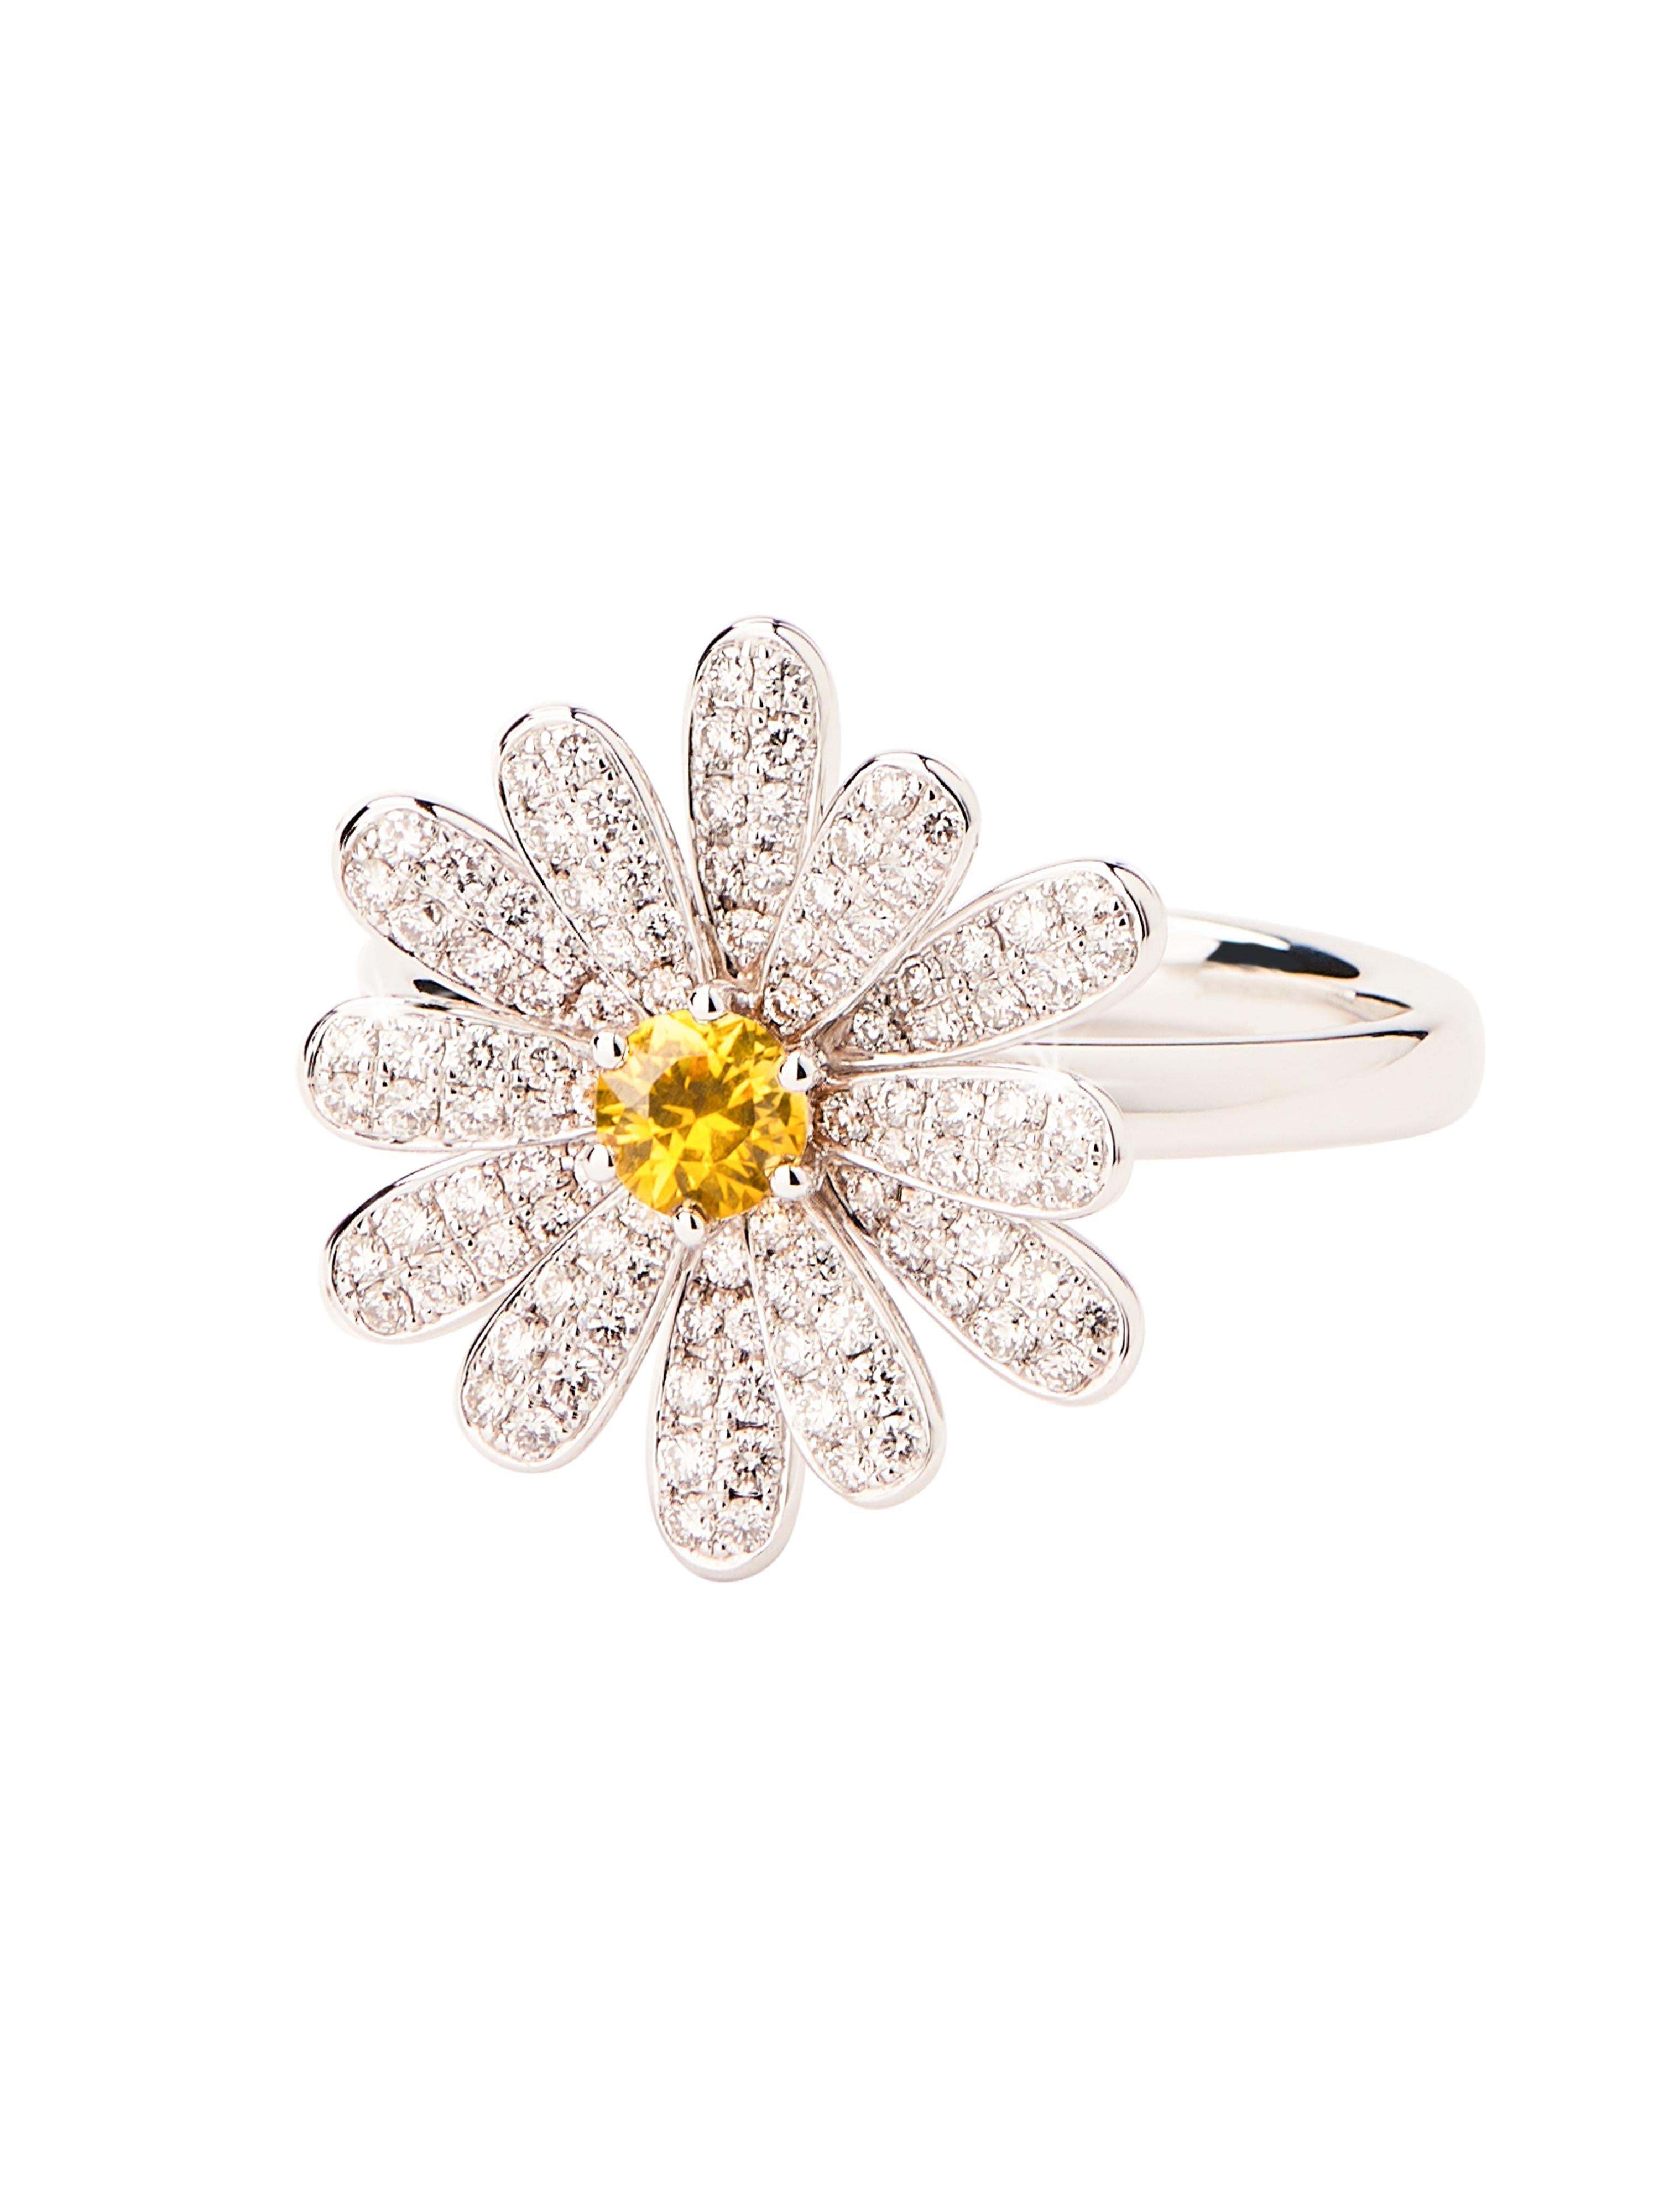 Die Kollektion Flower Poiray spiegelt die Eleganz und Reinheit des Know-hows des Juweliers wider. Sie besteht aus einer diamantgefassten Version mit einem gelben Saphir sowie zwei halbgefassten Versionen, die in Gelb- oder Weißgold erhältlich